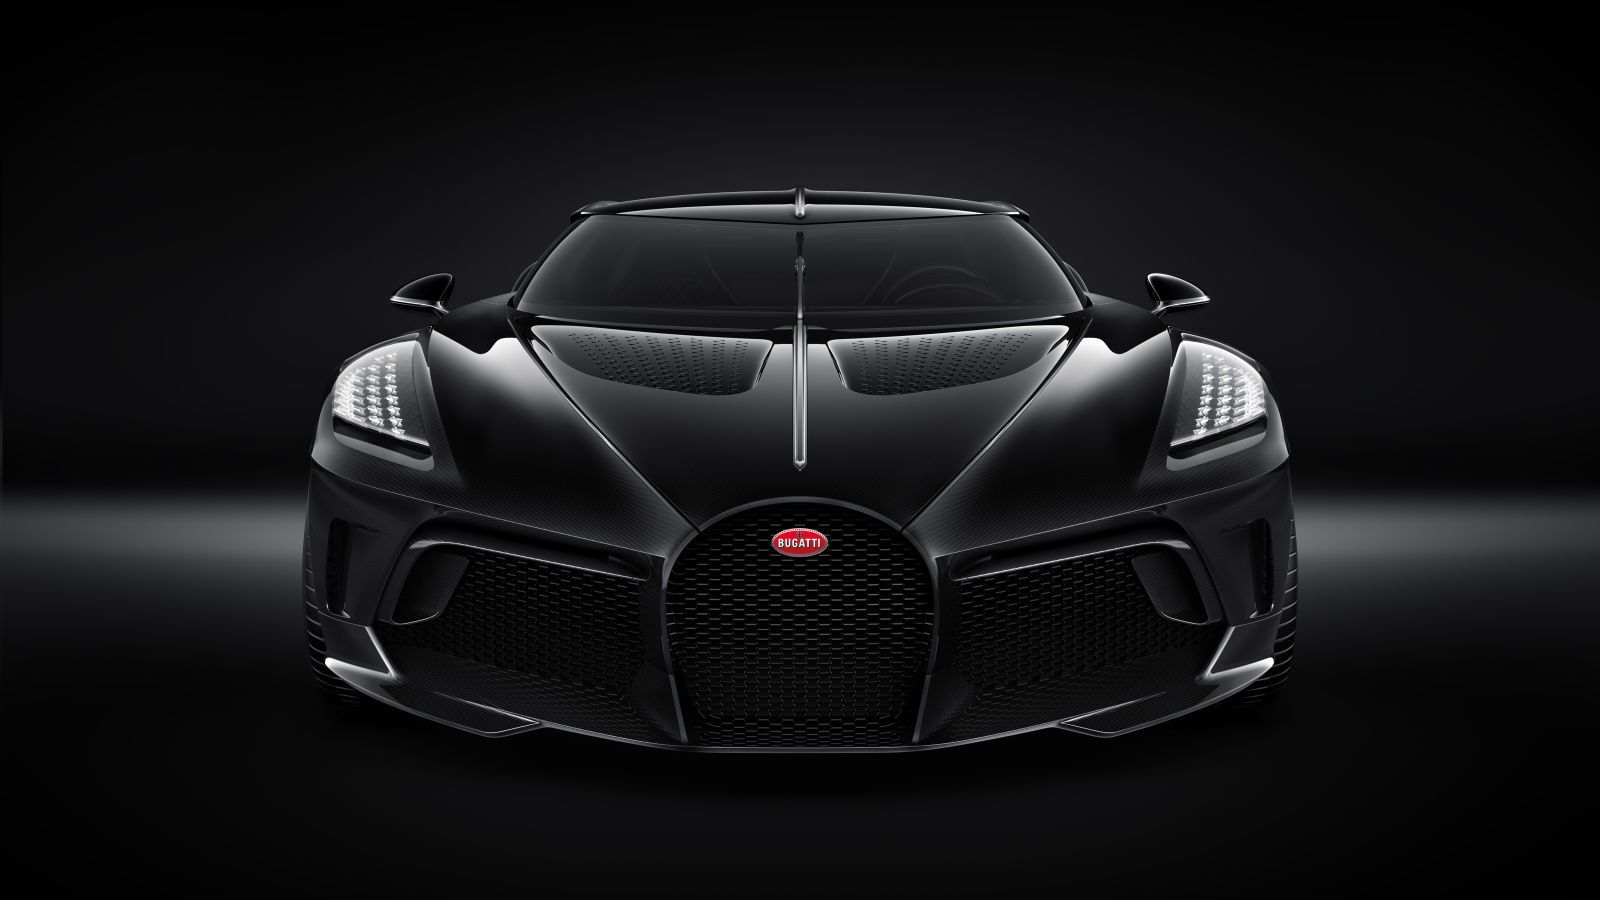 The Bugatti La Voiture Noire front end.